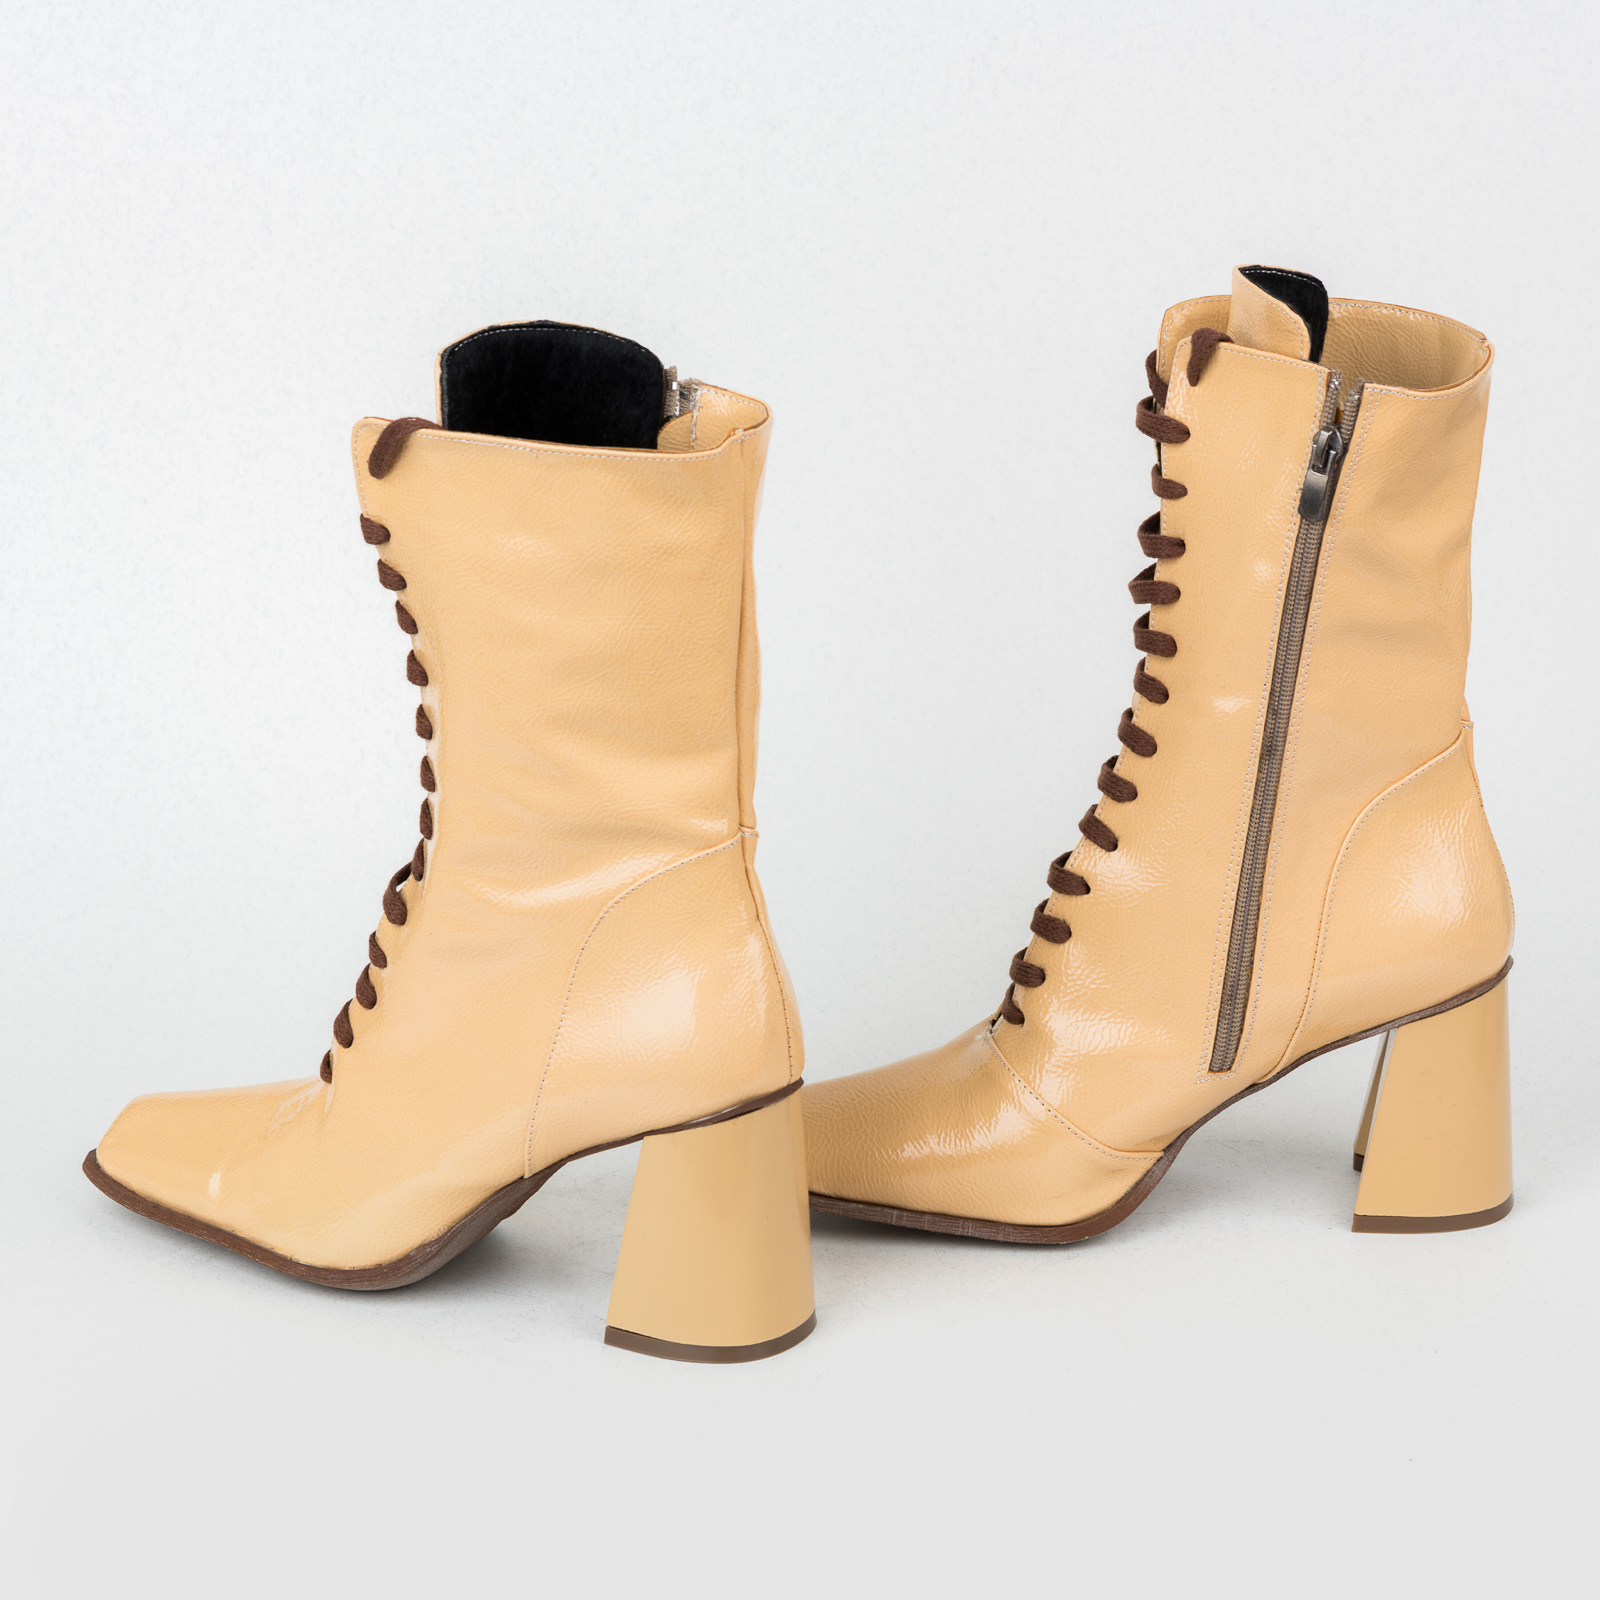 Women ankle boots B486 - BEIGE